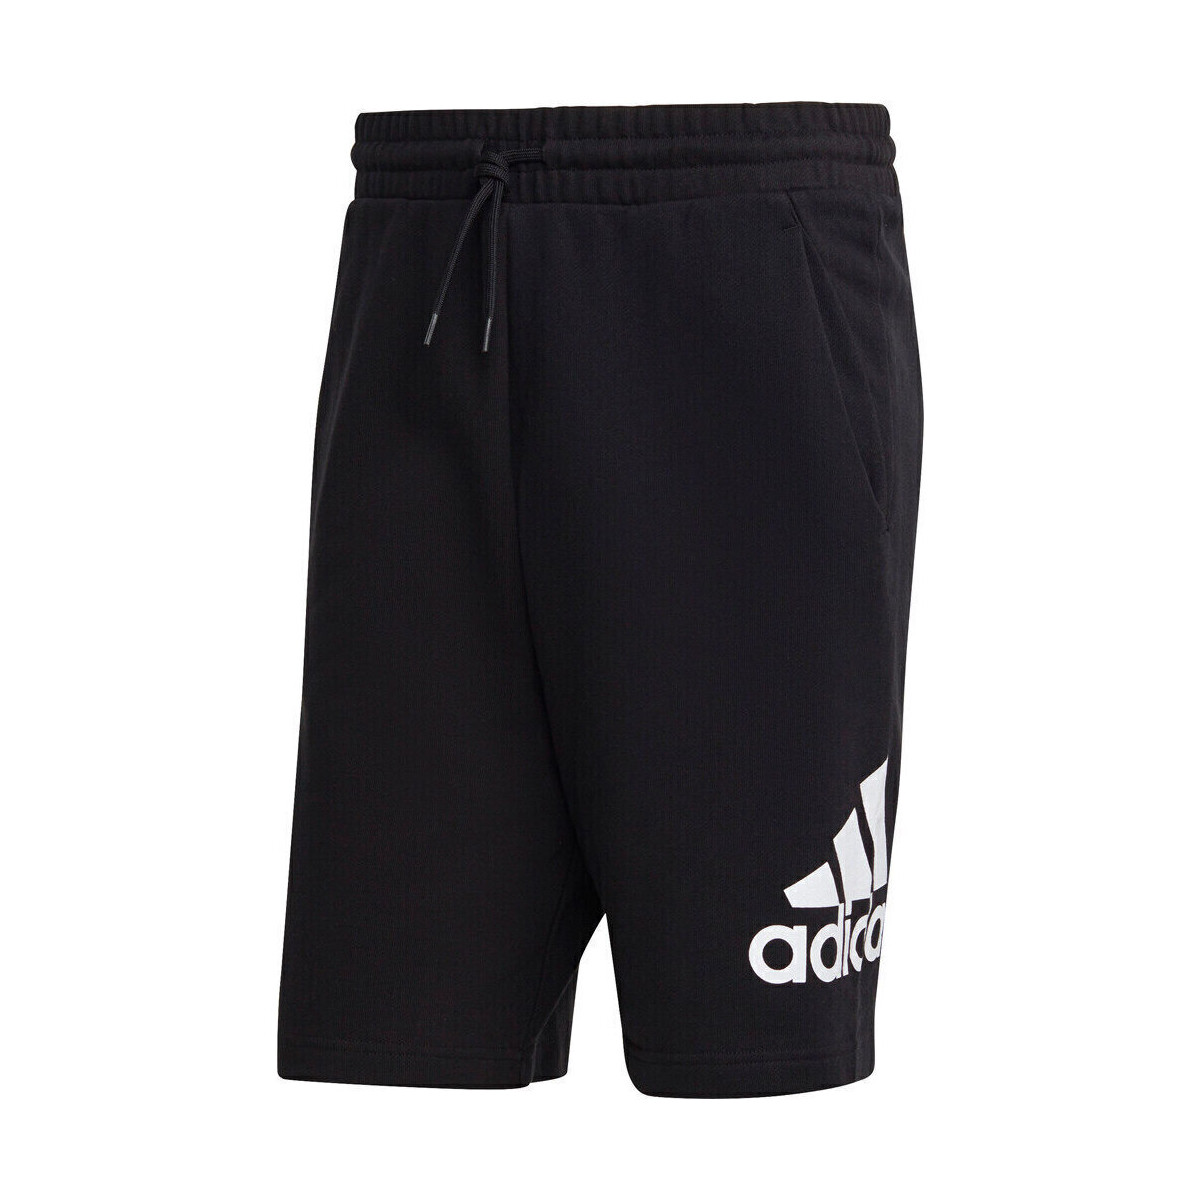 textil Hombre Shorts / Bermudas adidas Originals M MH BOSShortFT Negro